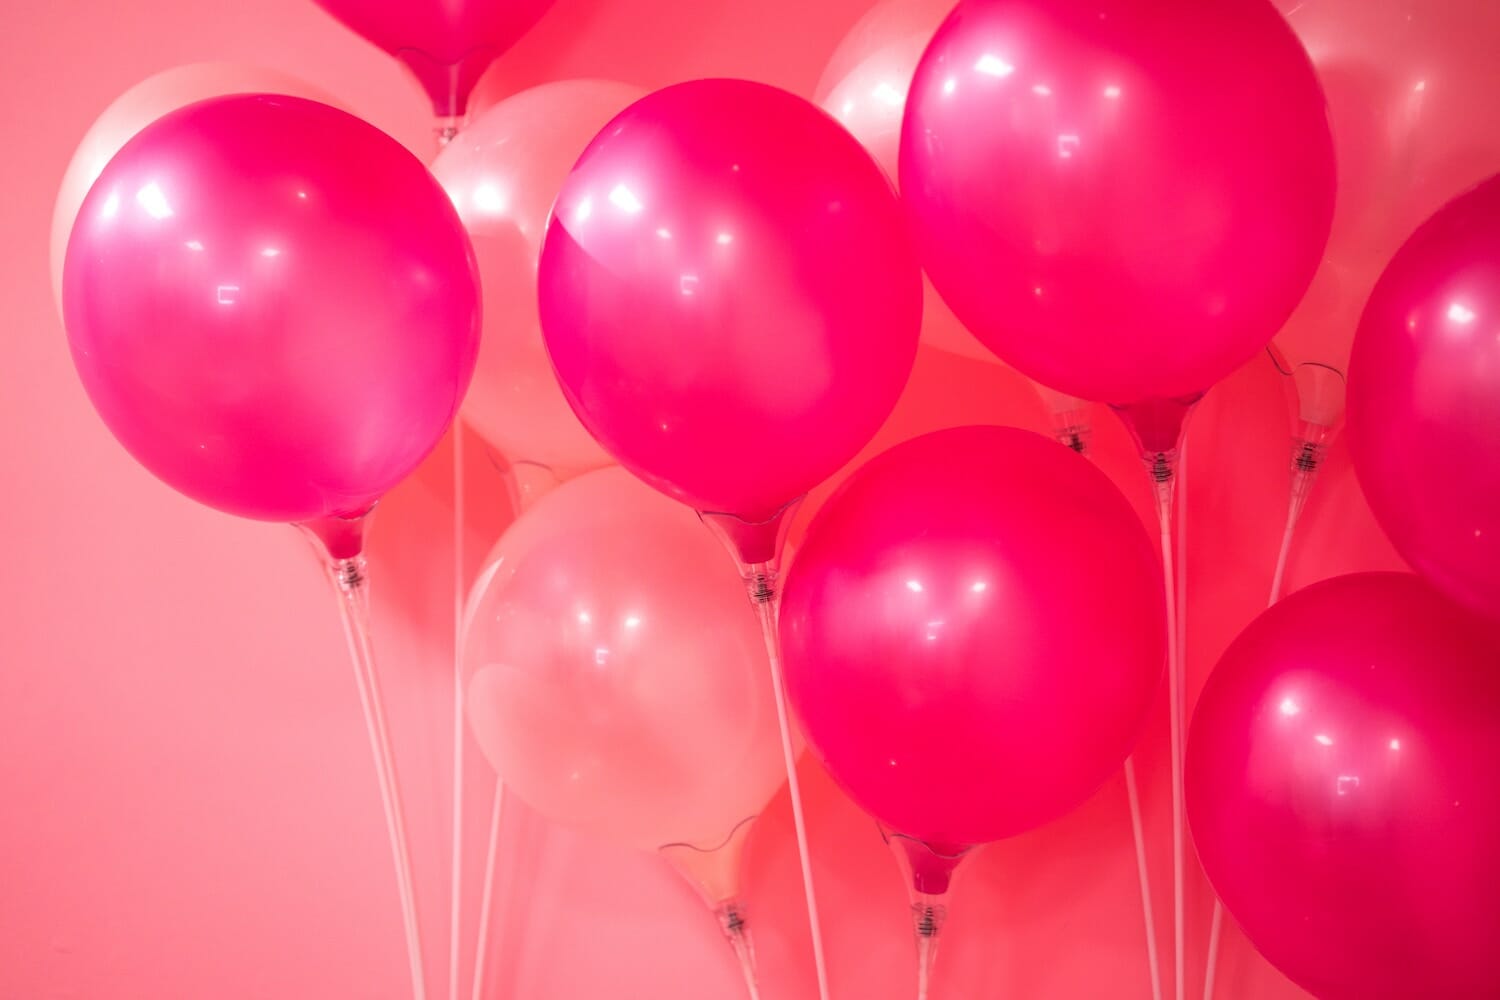 Des ballons roses pour organiser une jolie fête réussie